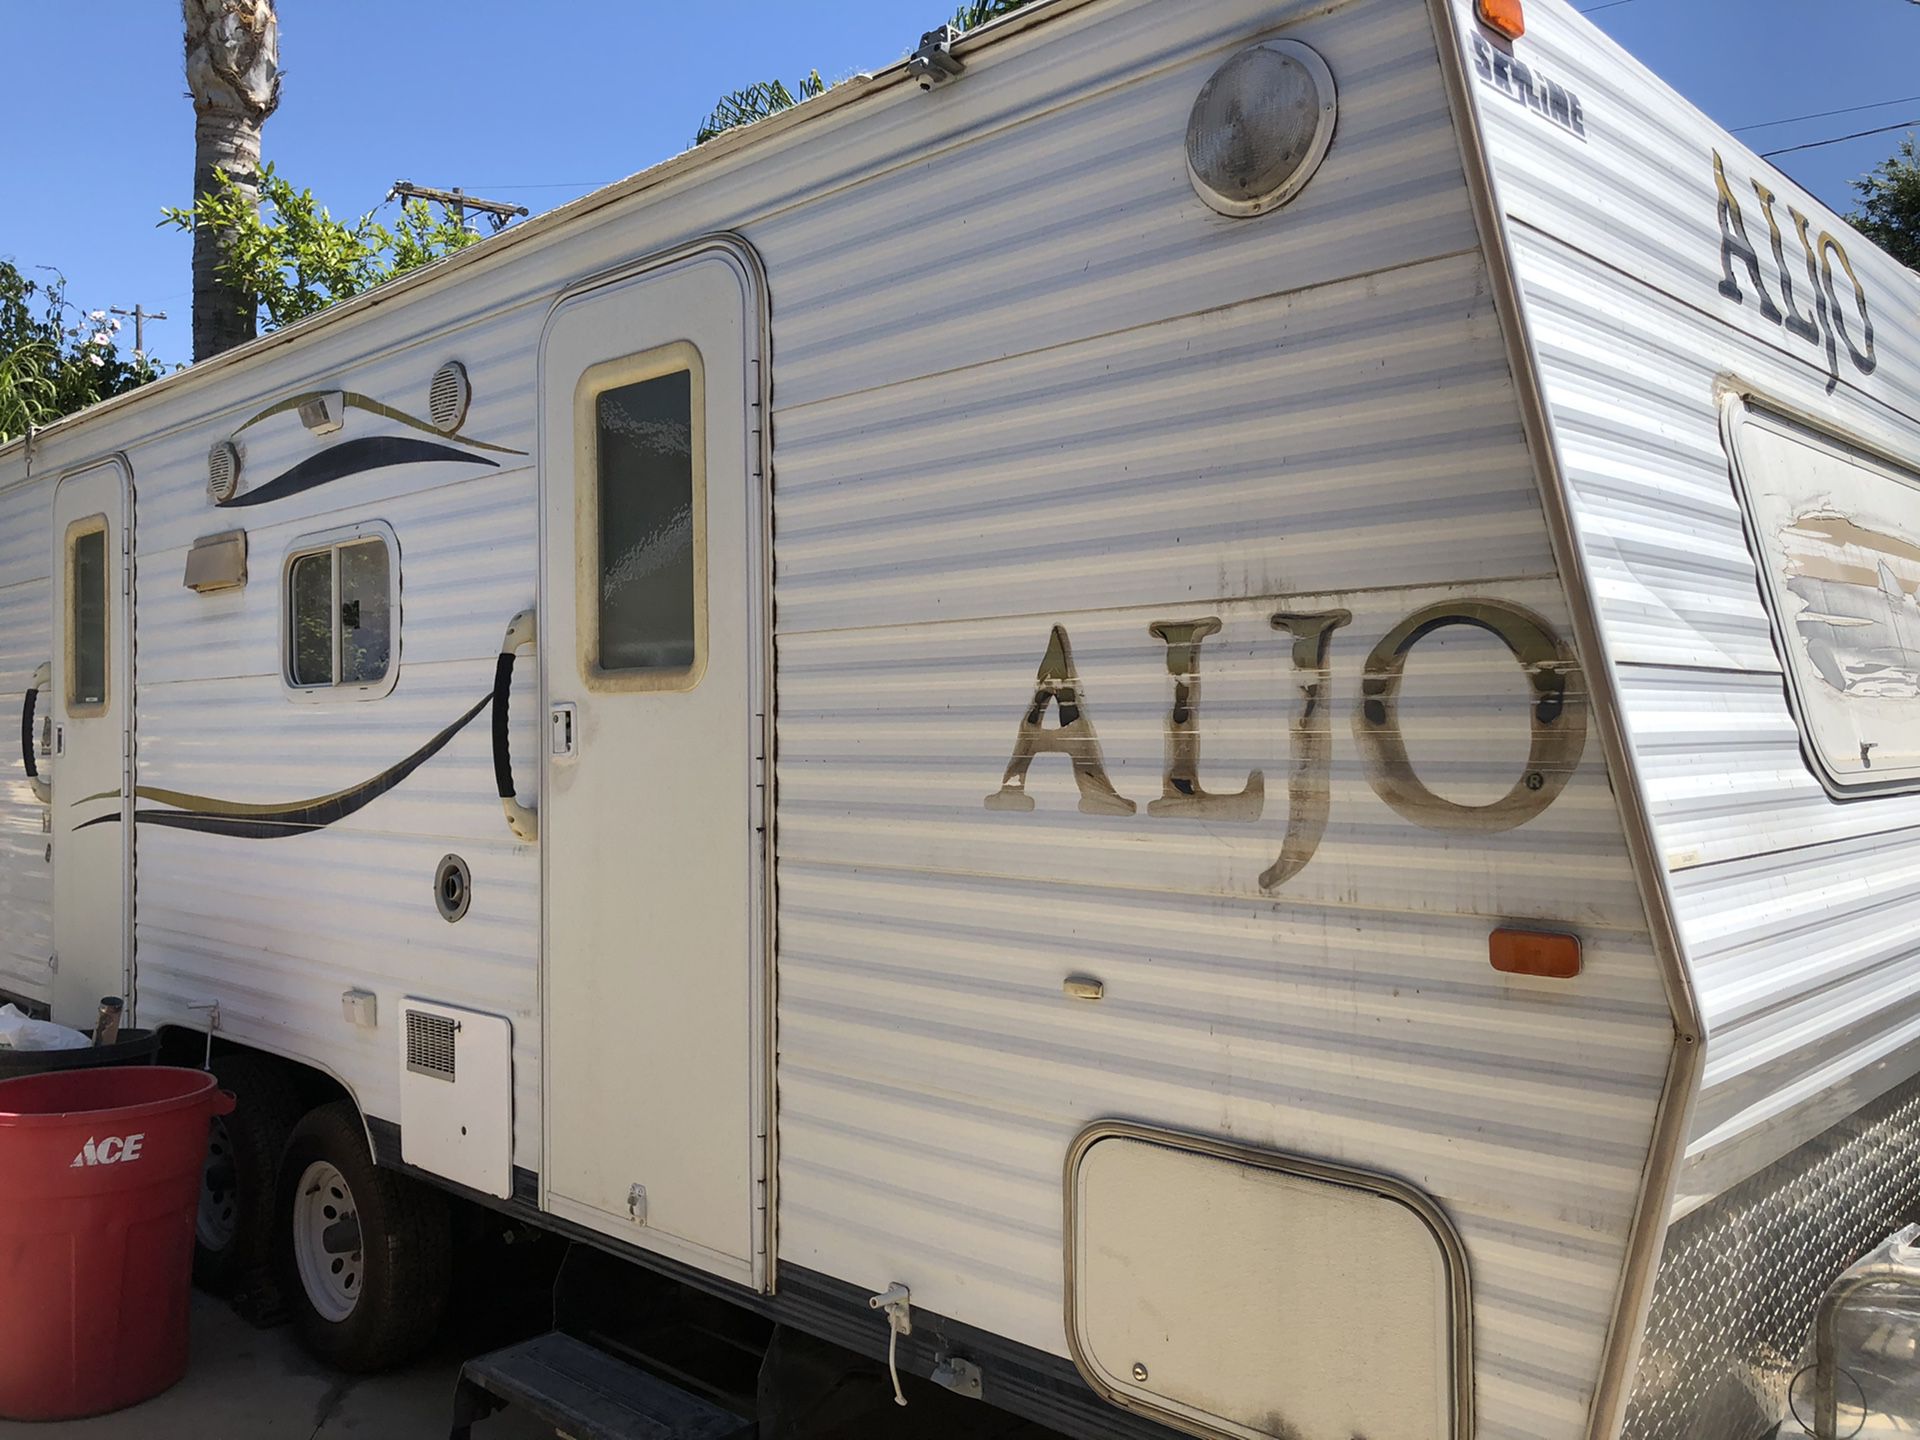 25ft camper trailer